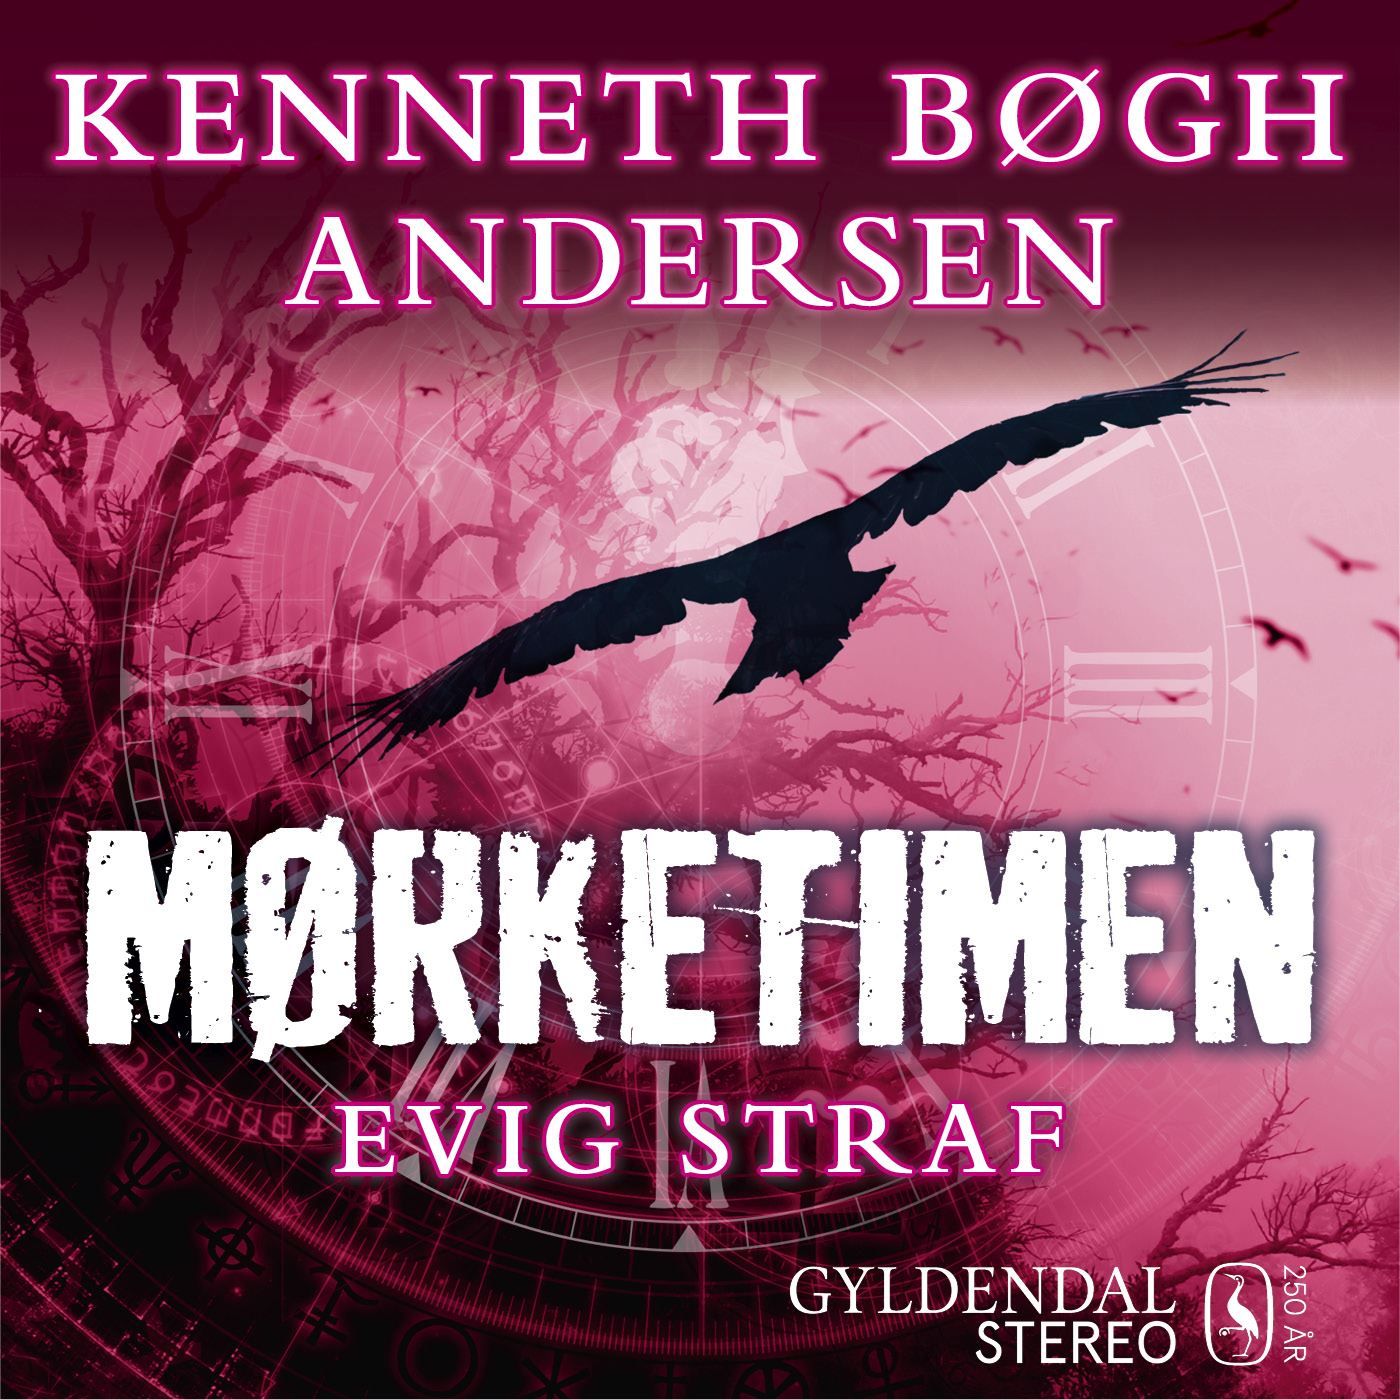 Mørketimen - Evig straf, audiobook by Kenneth Bøgh Andersen